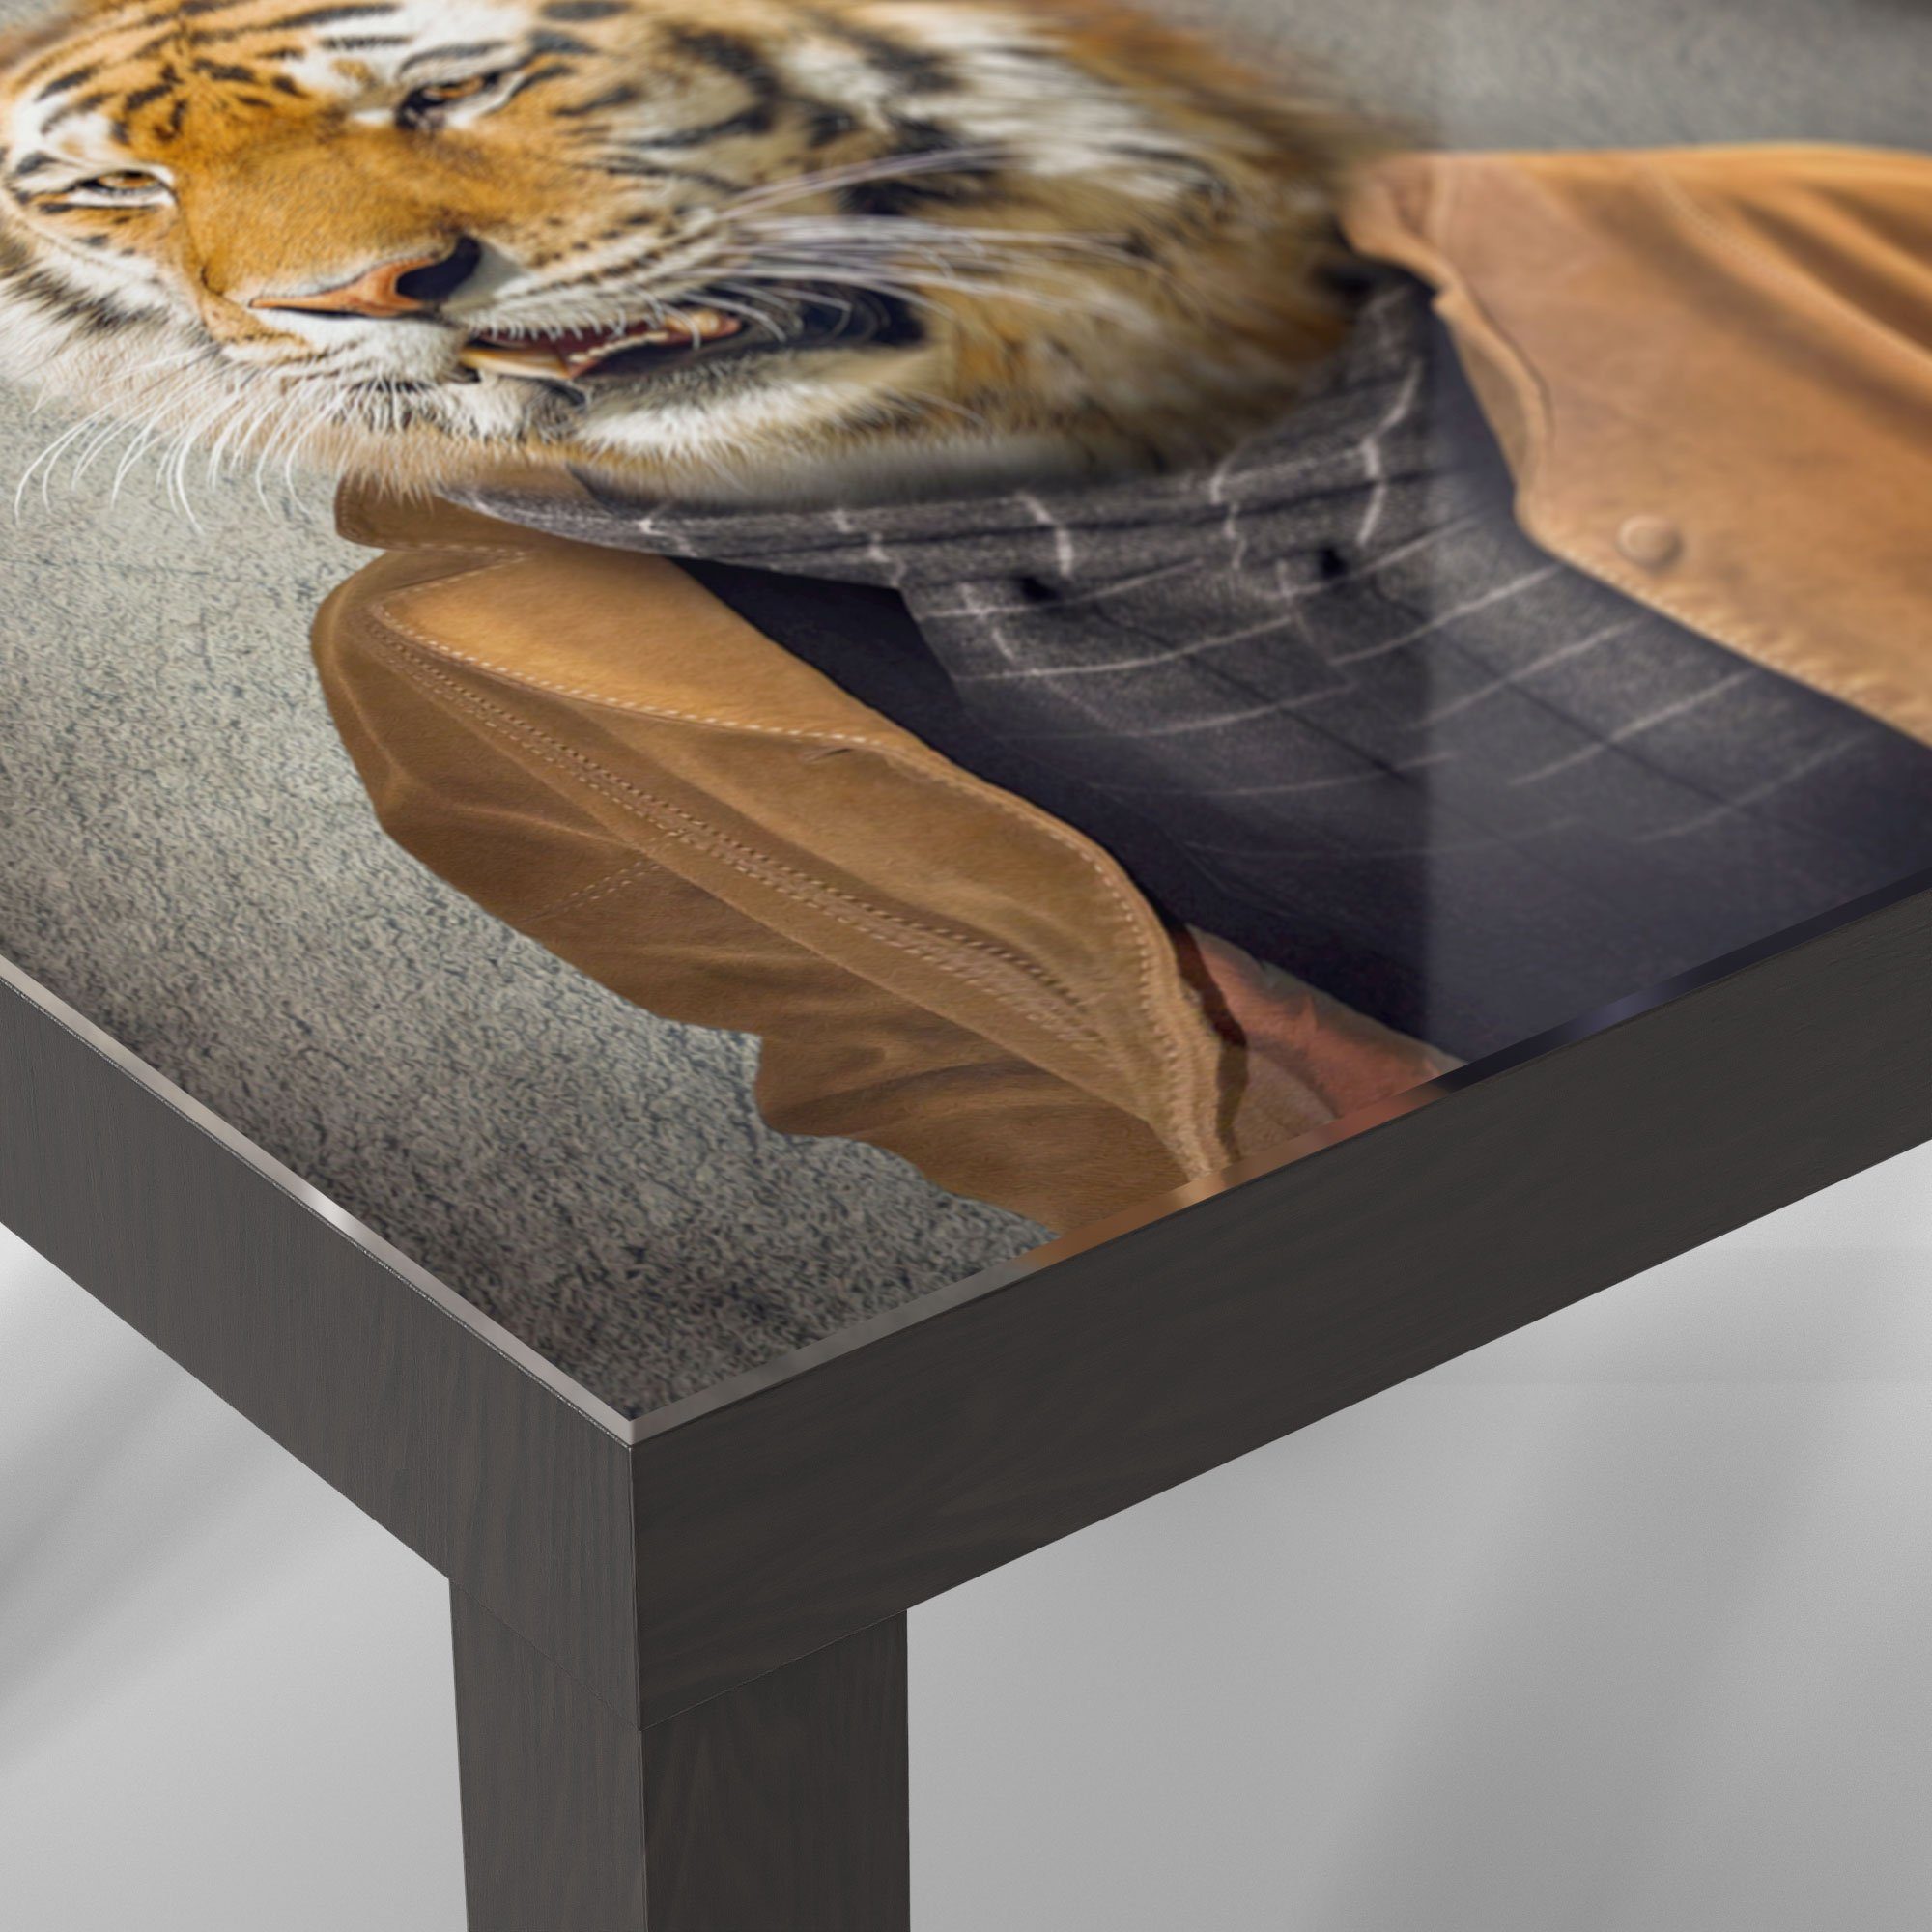 DEQORI modern 'Tiger Glastisch Couchtisch Menschengestalt', Beistelltisch in Glas Schwarz